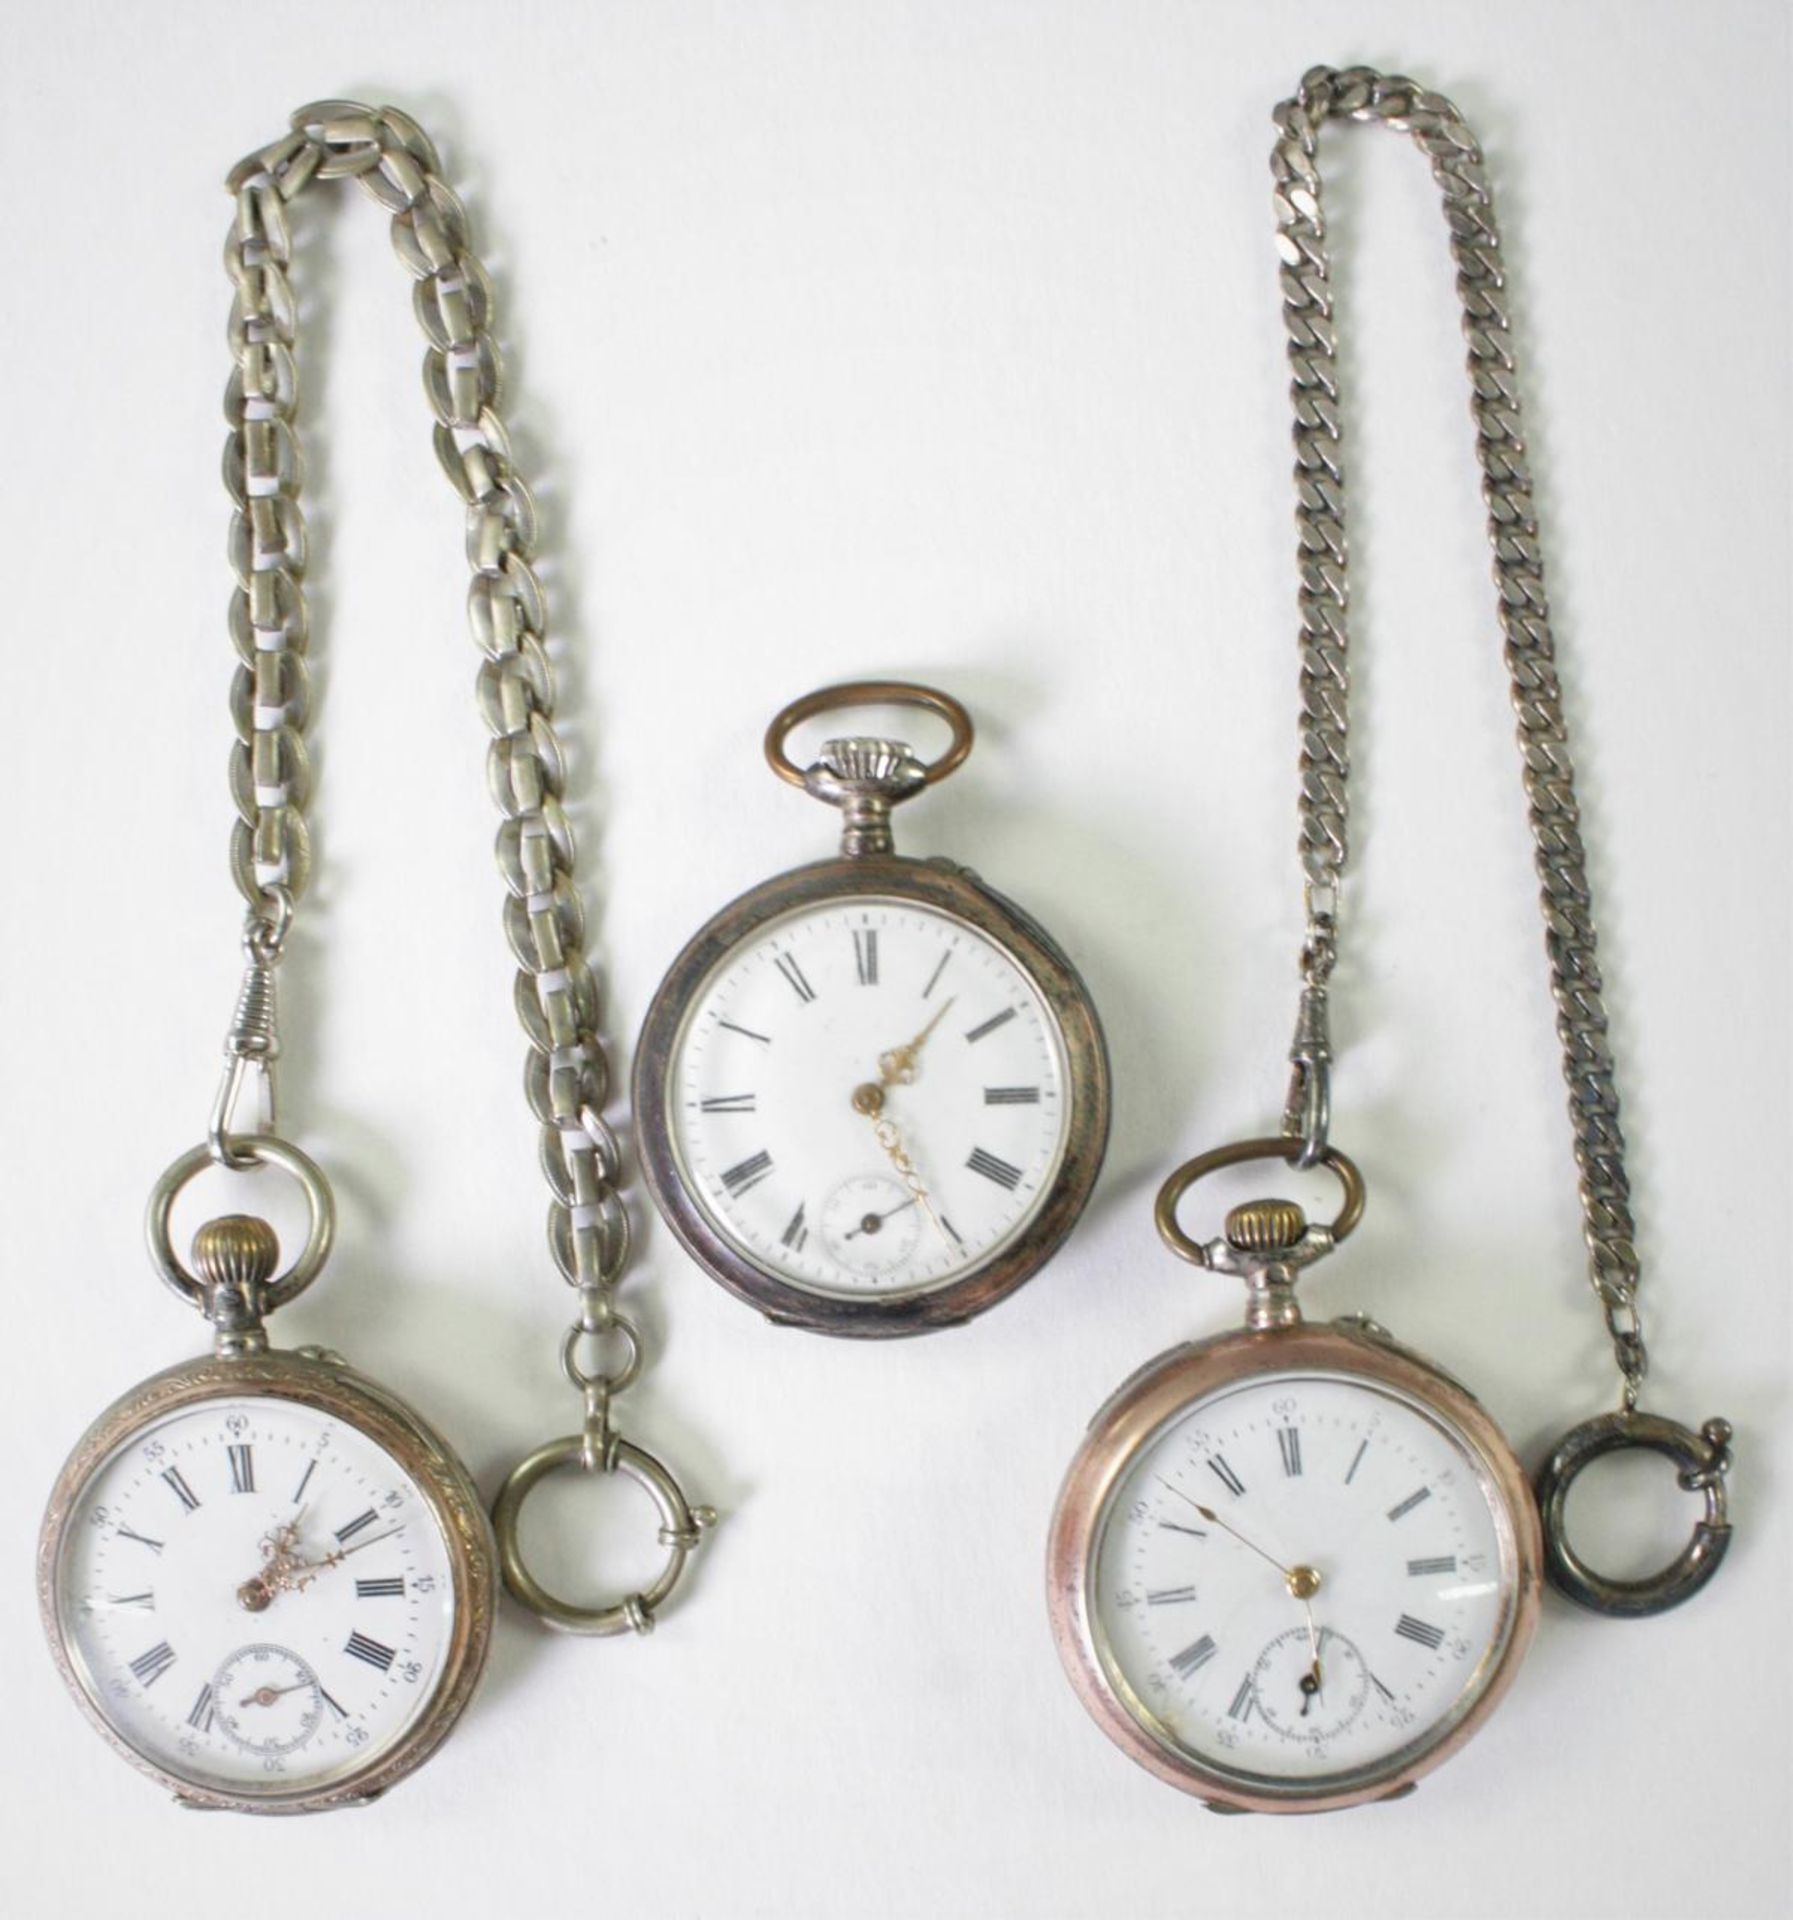 Drei antike Taschenuhren um 1900 aus Silber